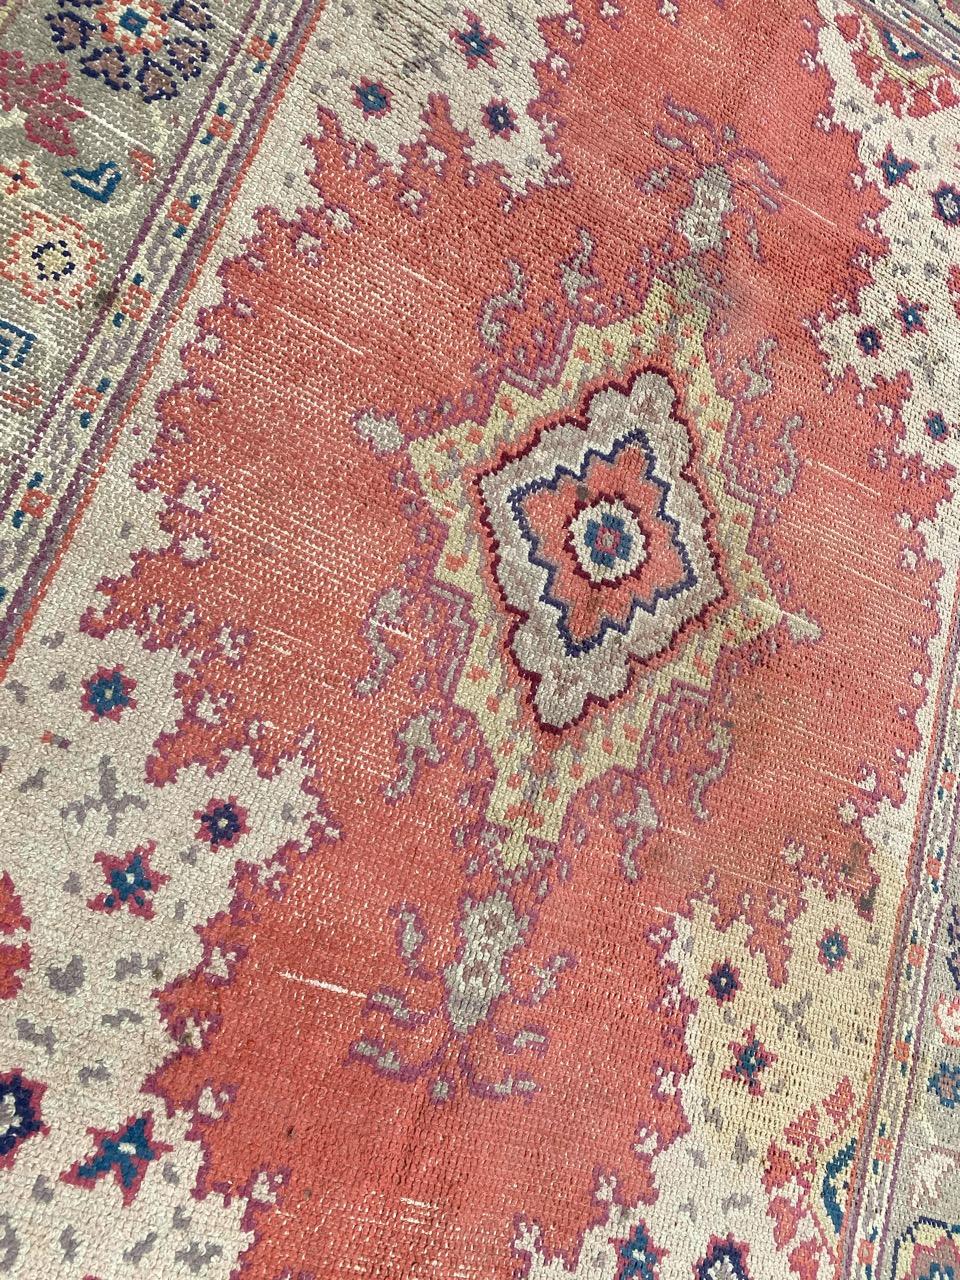 Schöner europäischer Teppich mit zentralem Medaillonmuster und schönen Farben, komplett handgeknüpft mit Wollsamt auf Baumwollgrund.